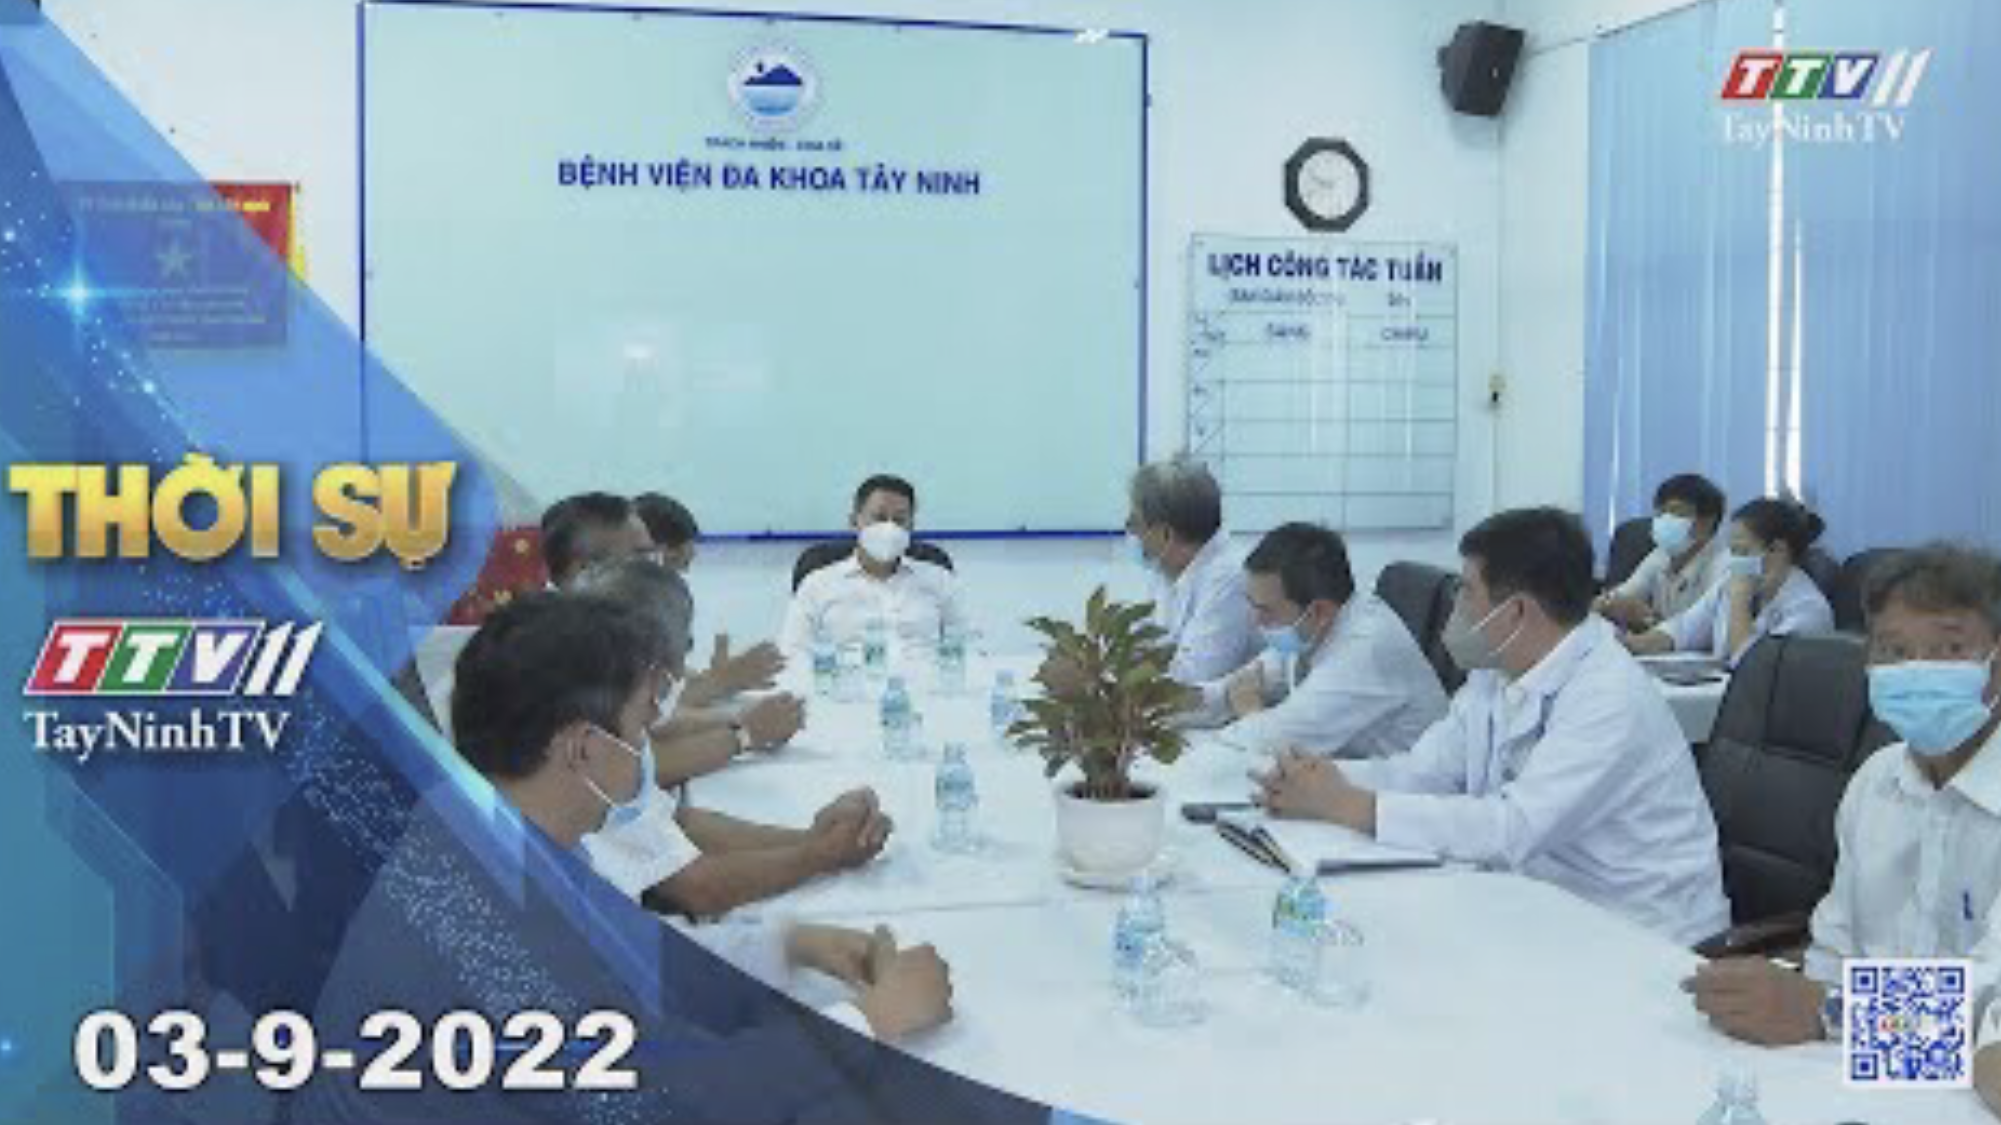 Thời sự Tây Ninh 03-9-2022 | Tin tức hôm nay | TayNinhTV